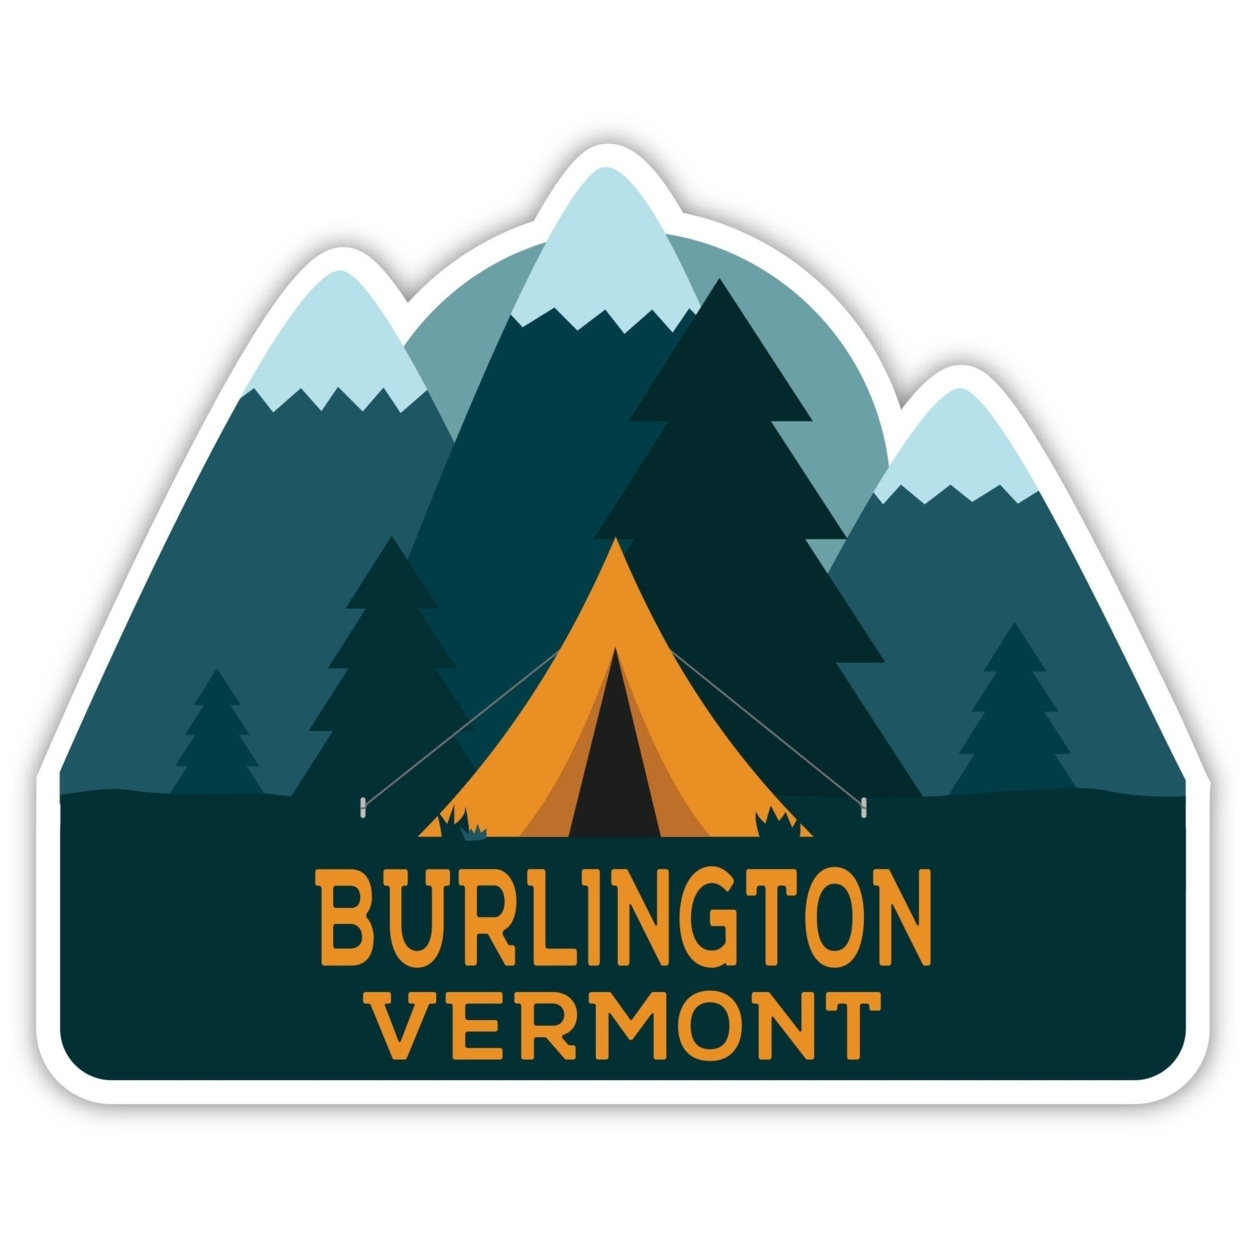 Burlington Vermont Souvenir Decorative Stickers (Choose Theme And Size) - Single Unit, 10-Inch, Tent